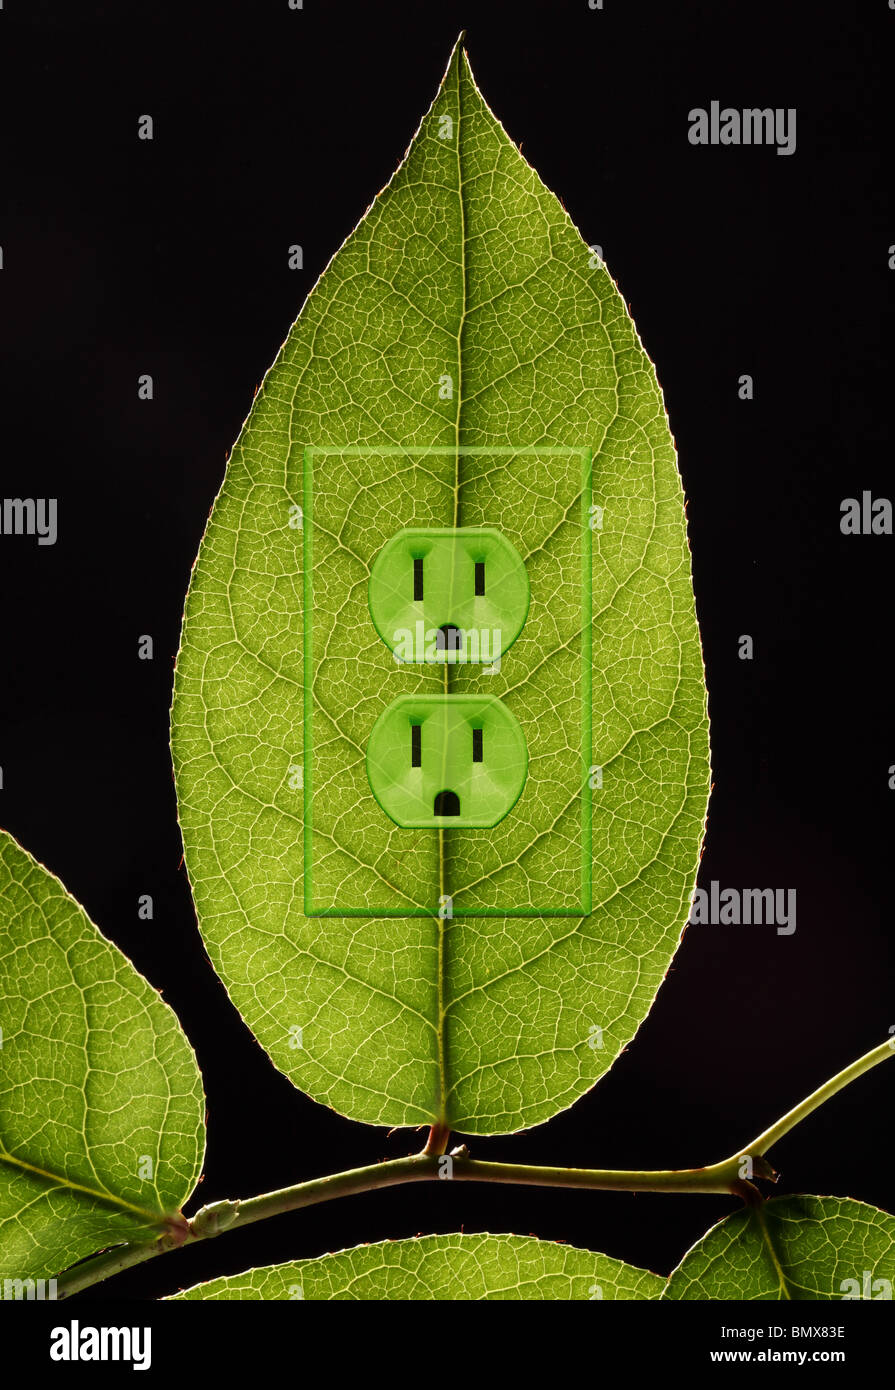 Une plante verte feuille avec une prise d'alimentation électrique Banque D'Images